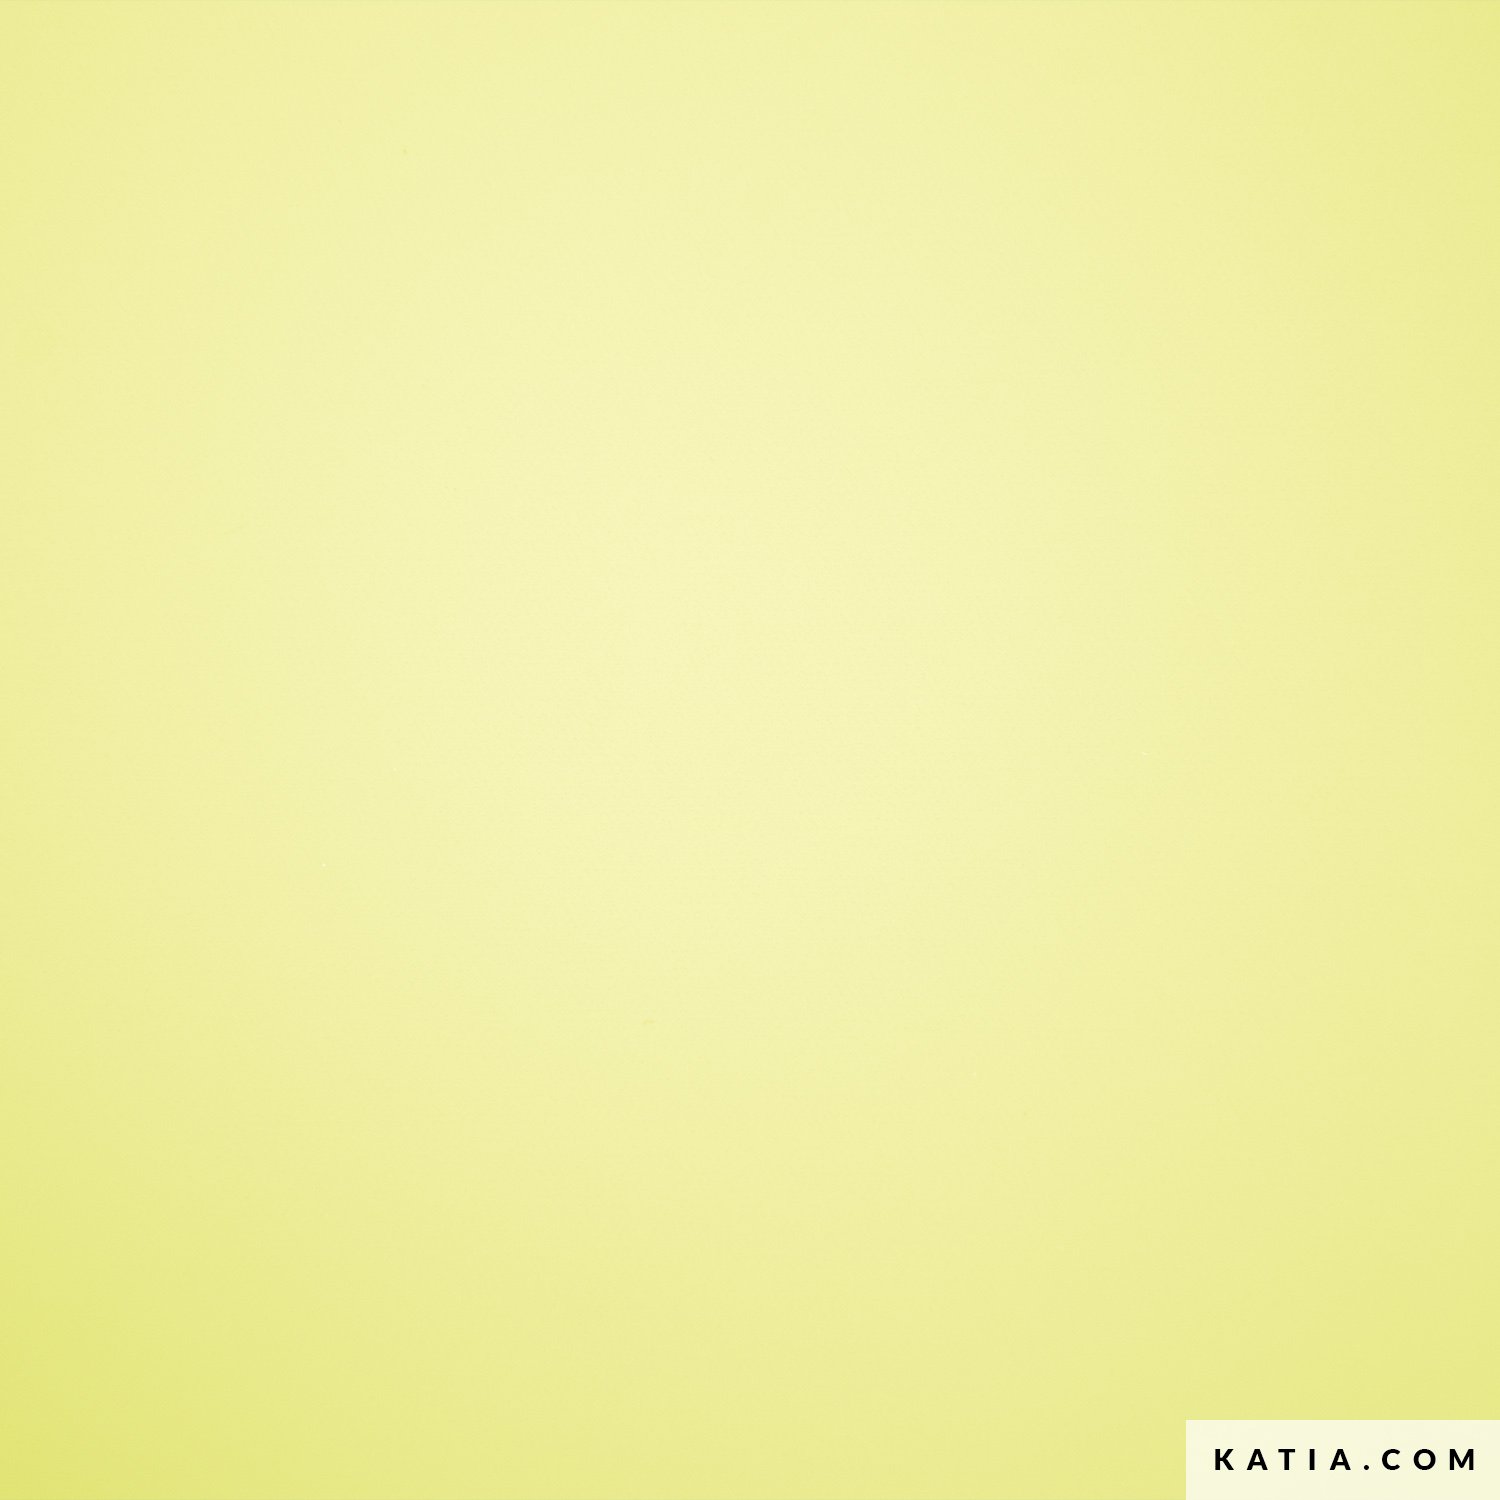 beschichtetes-pvc-in-der-farbe-limonengelb-2212-1-katia-fhd